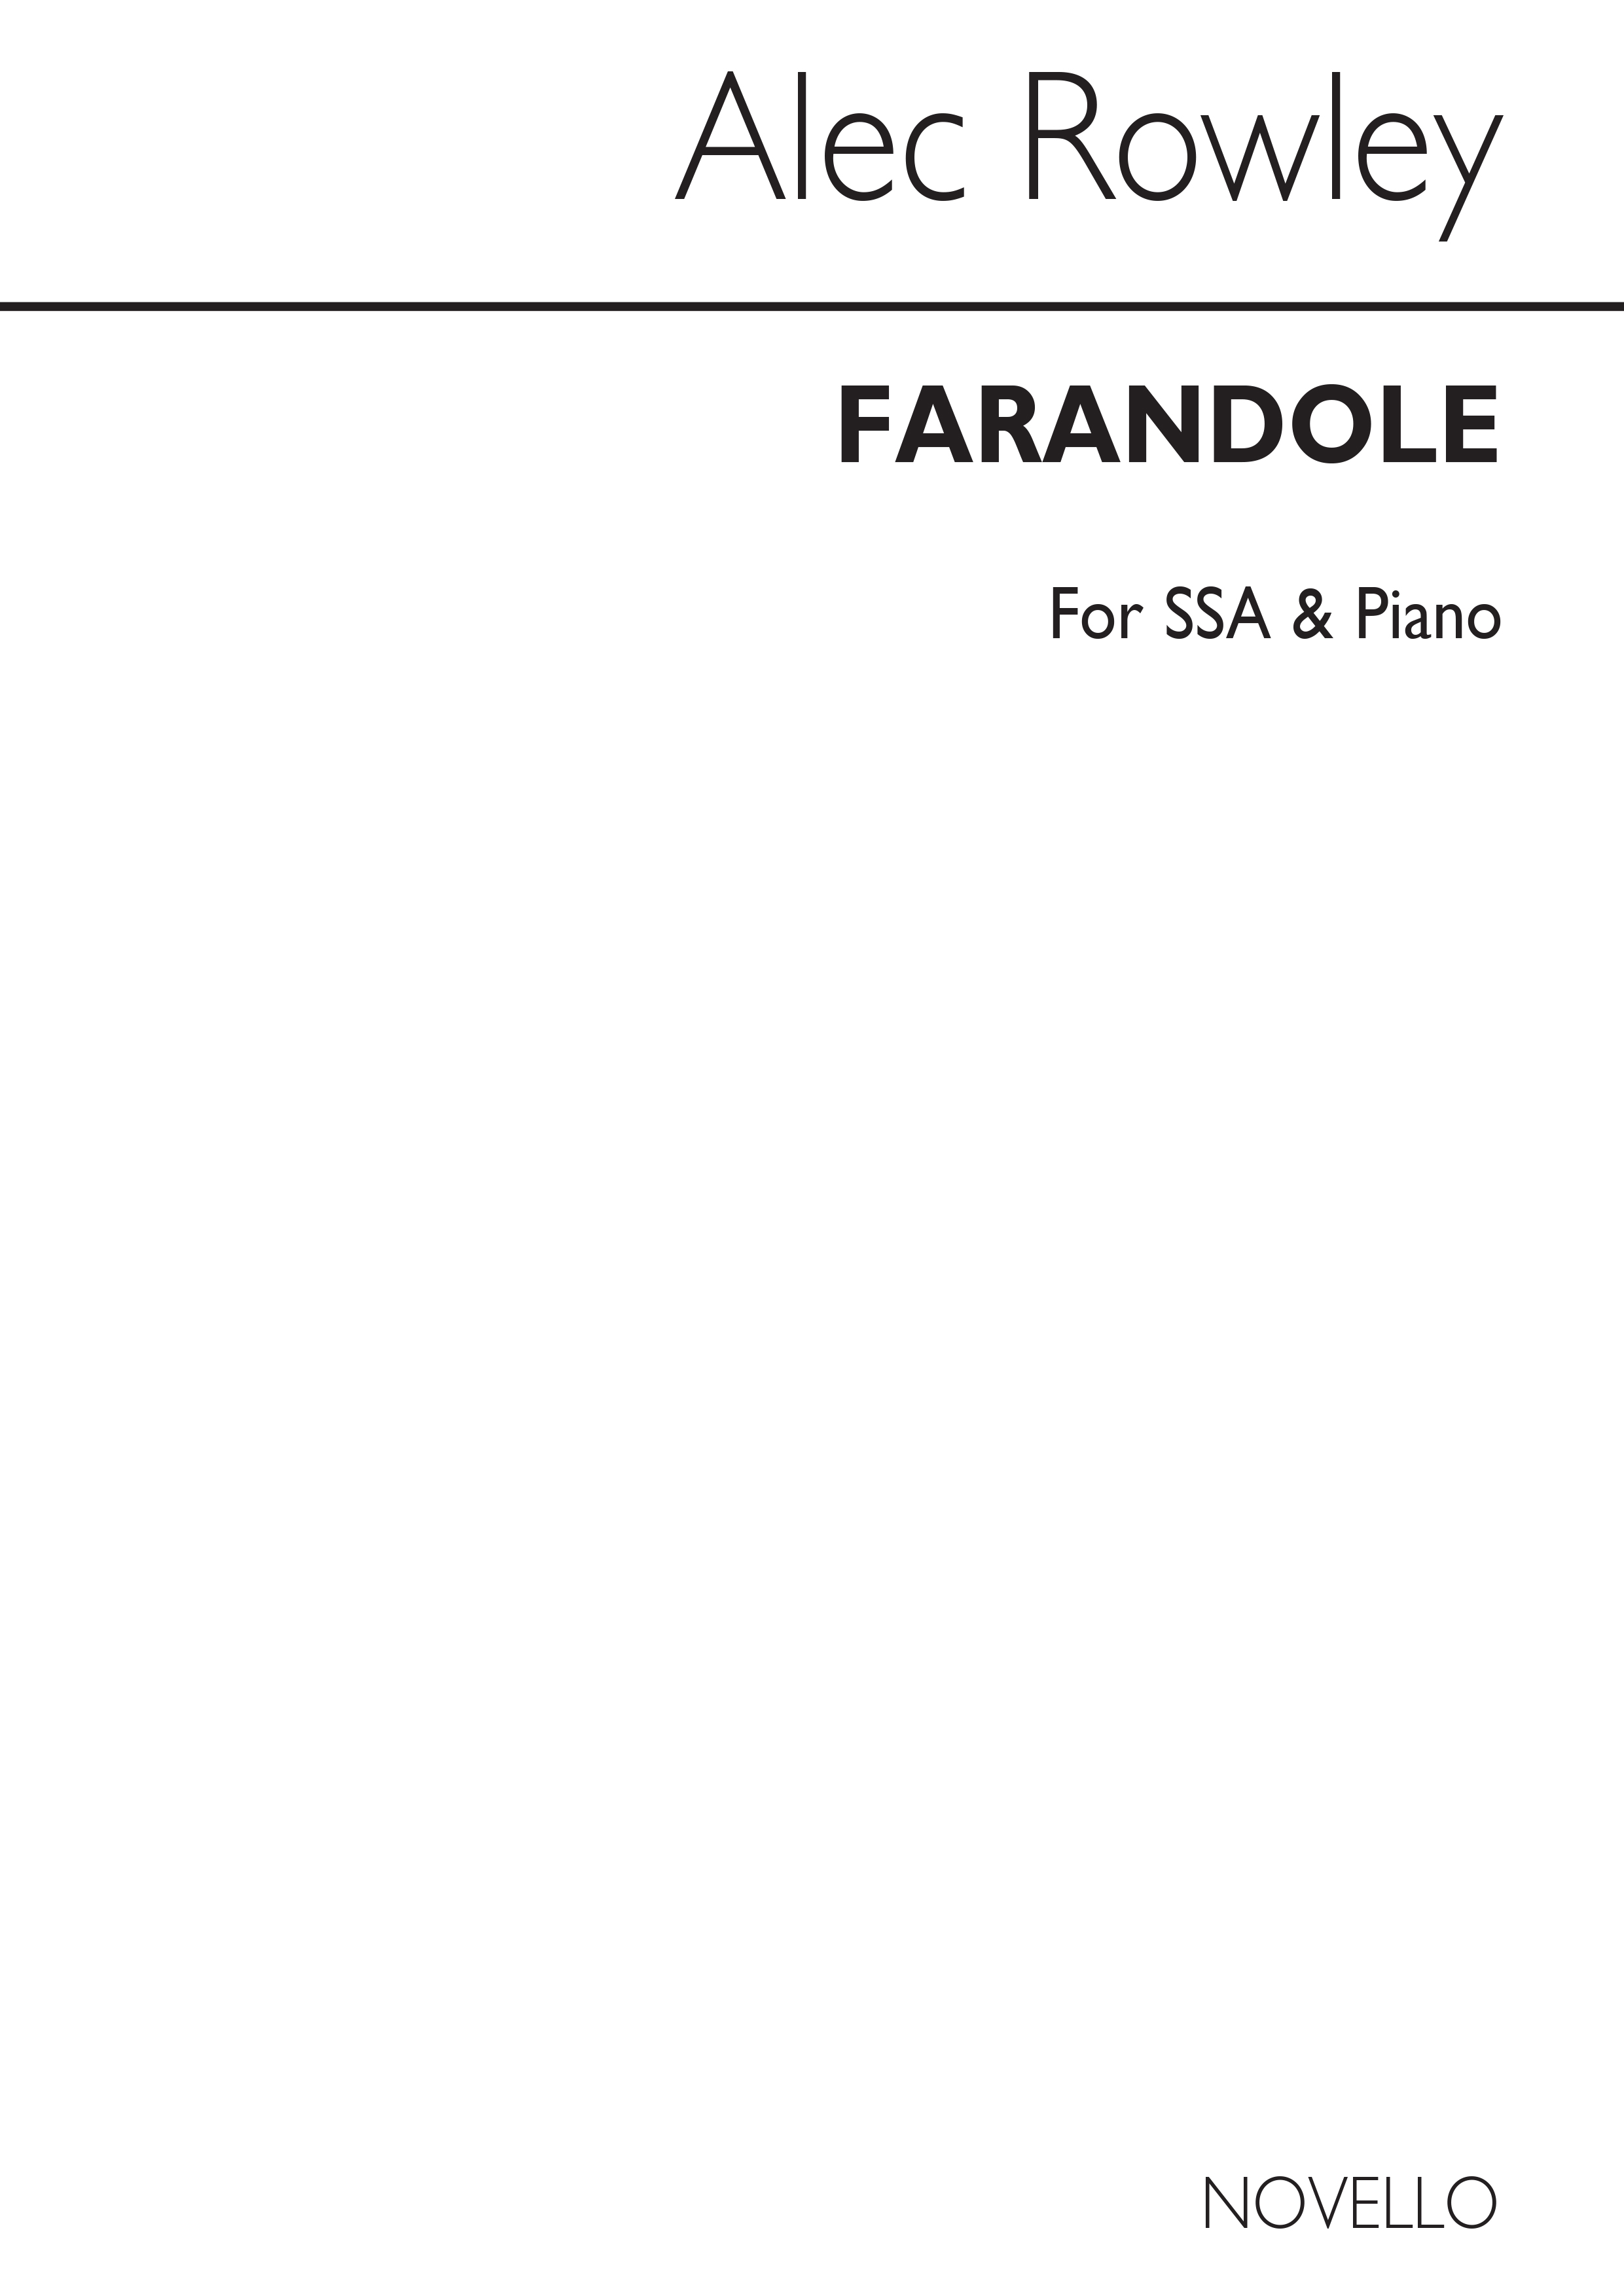 Alec Rowley: Alec Rowley Farandole Ssa/Piano: SSA: Vocal Score